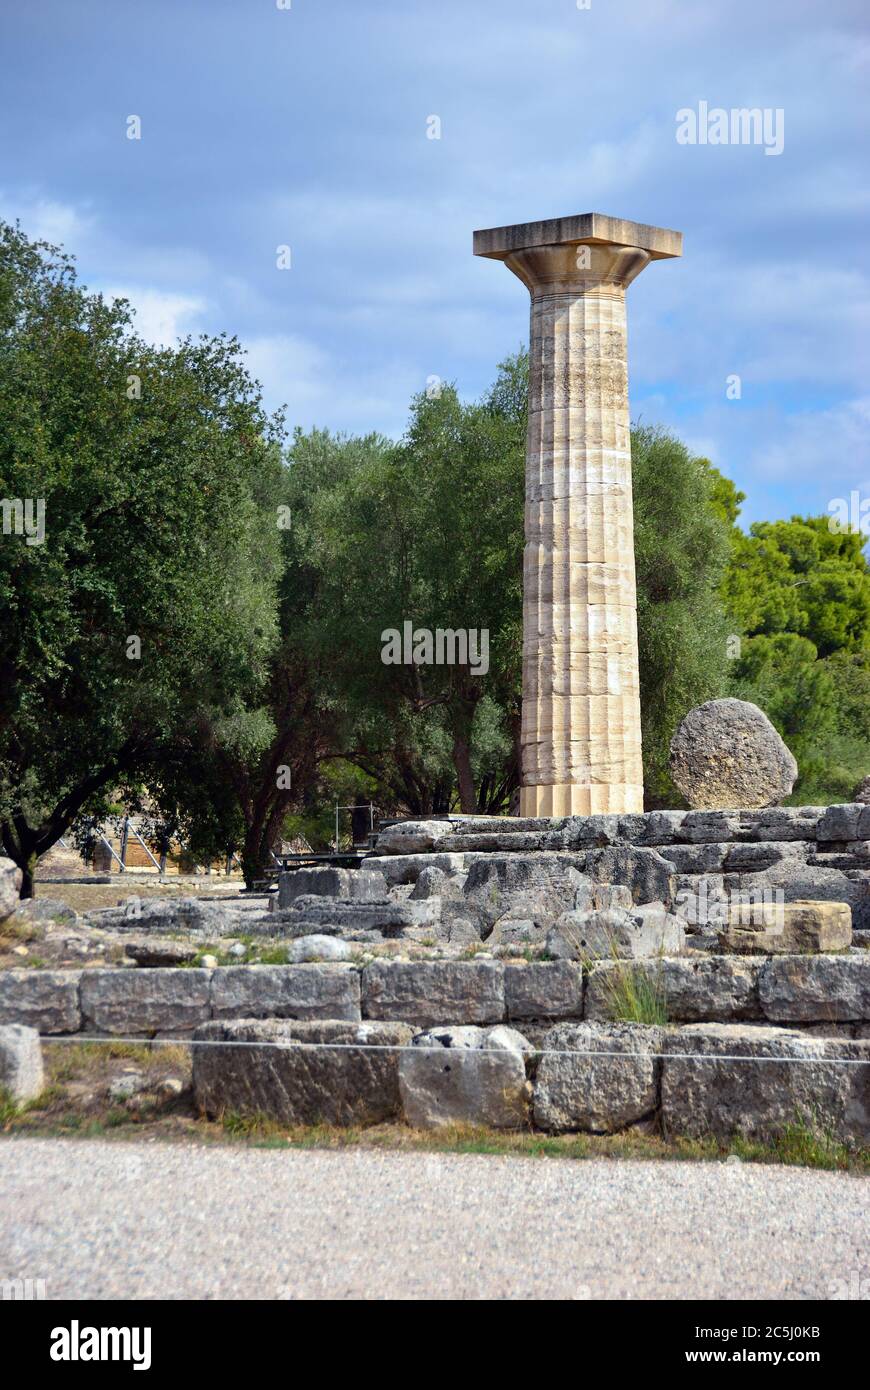 Grèce Olympie, ruines anciennes du temple de Zeus, c'est le bâtiment le plus important de l'Altis à Olympie, berceau des Jeux olympiques Banque D'Images